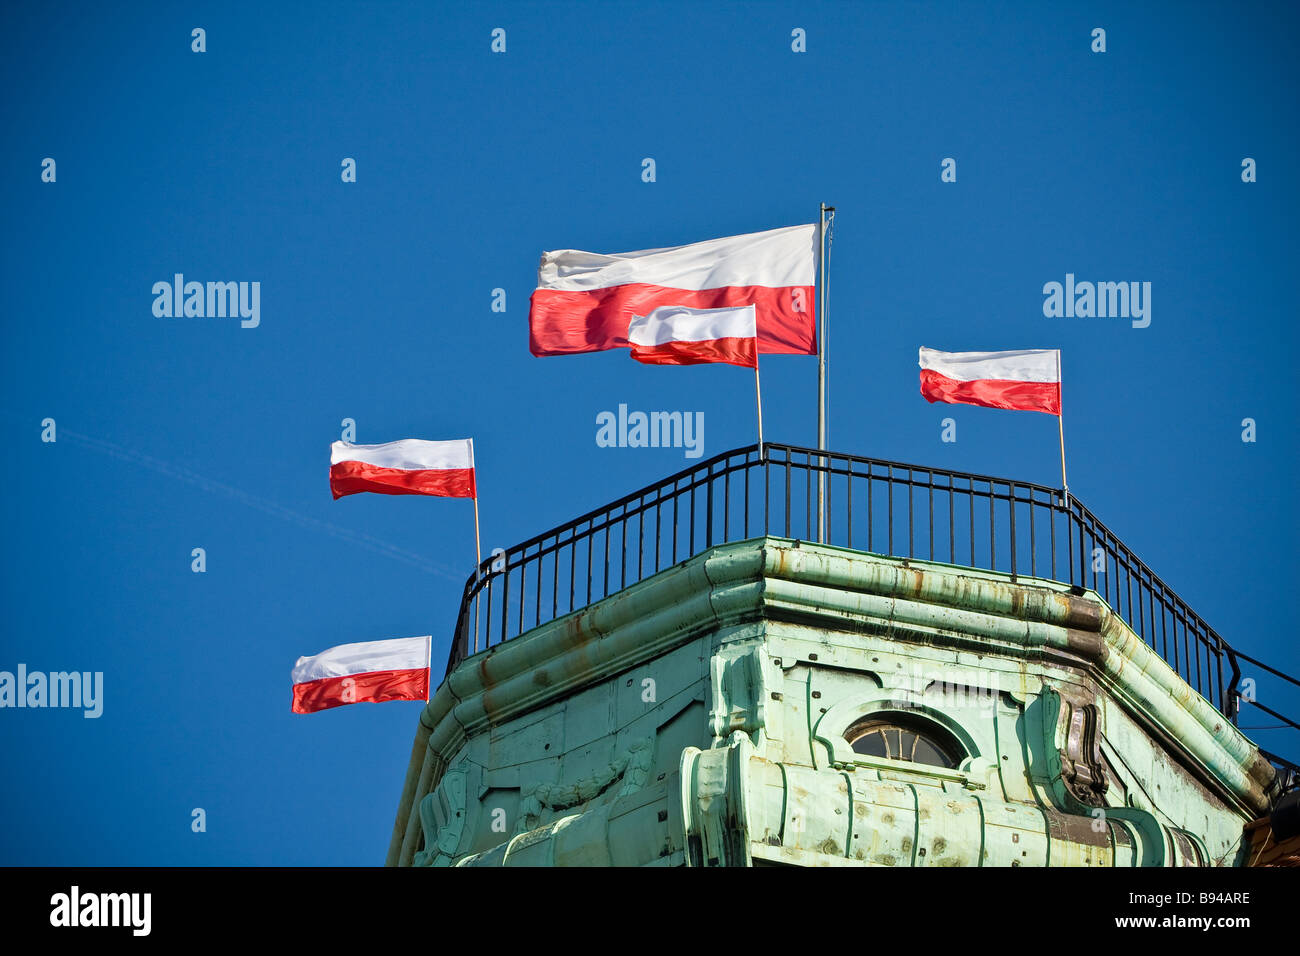 Brandissant des drapeaux polonais on blue sky Banque D'Images